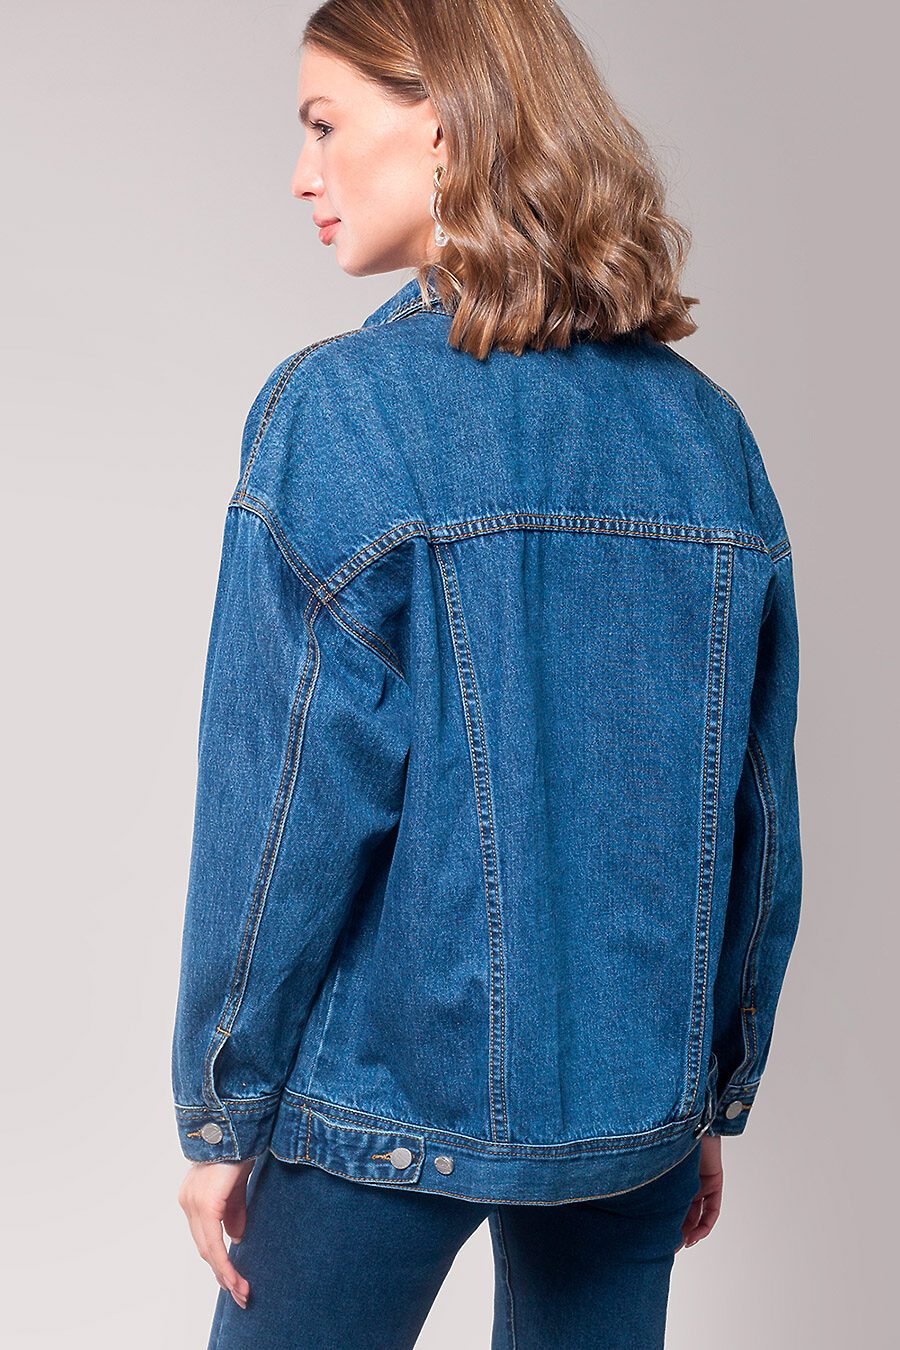 Куртка для женщин VILATTE 741667 купить оптом от производителя. Совместная покупка женской одежды в OptMoyo